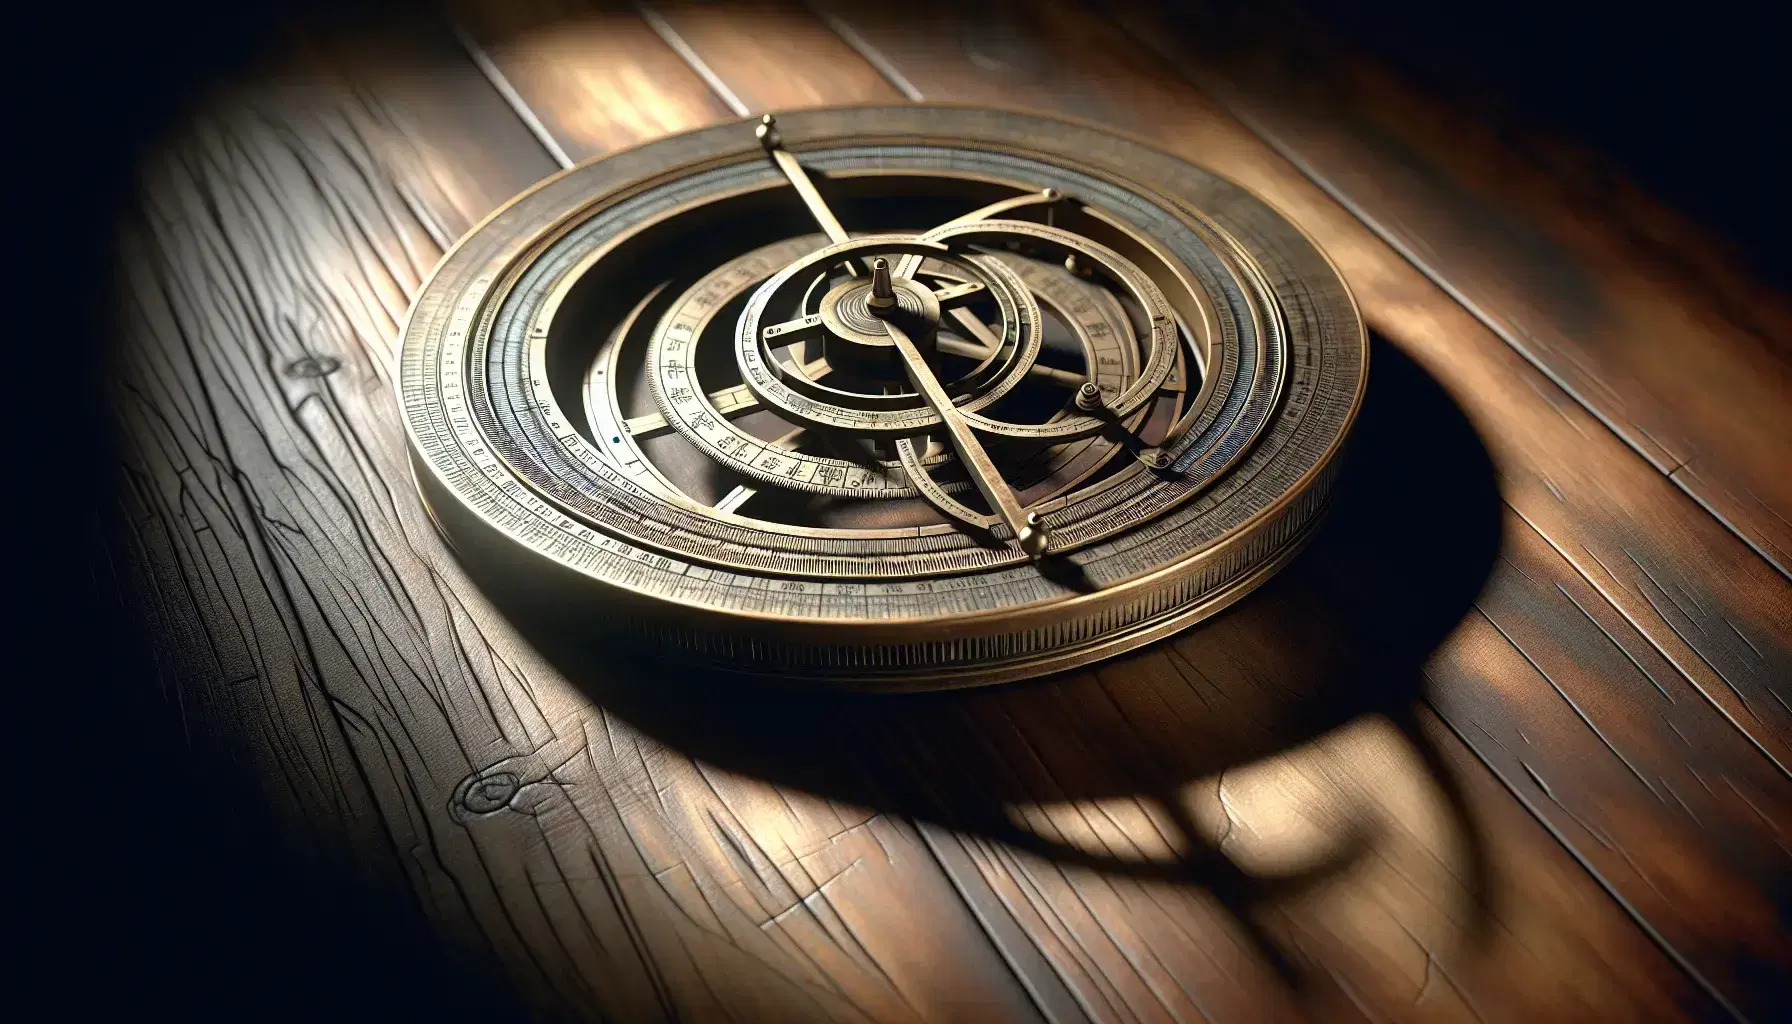 Astrolabe antiguo de bronce con círculos concéntricos y brazos ajustables sobre superficie de madera oscura, iluminado lateralmente que resalta su textura y tridimensionalidad.